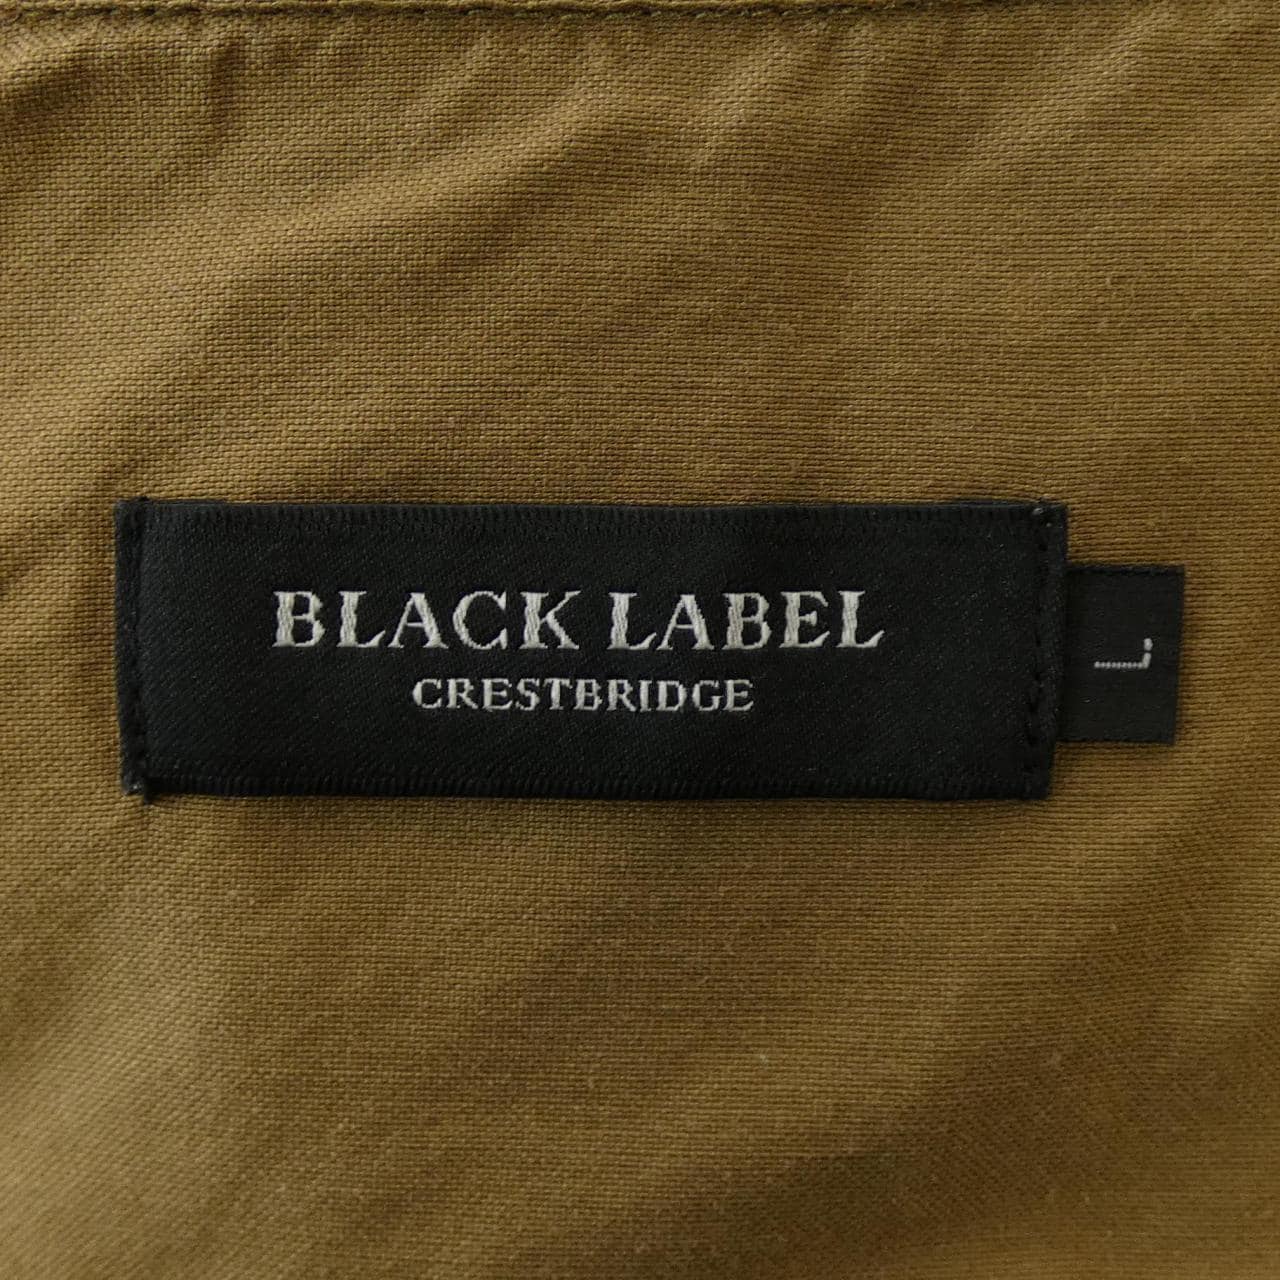 Black label crest bridge BLACK LABEL CRESTBRI shirt